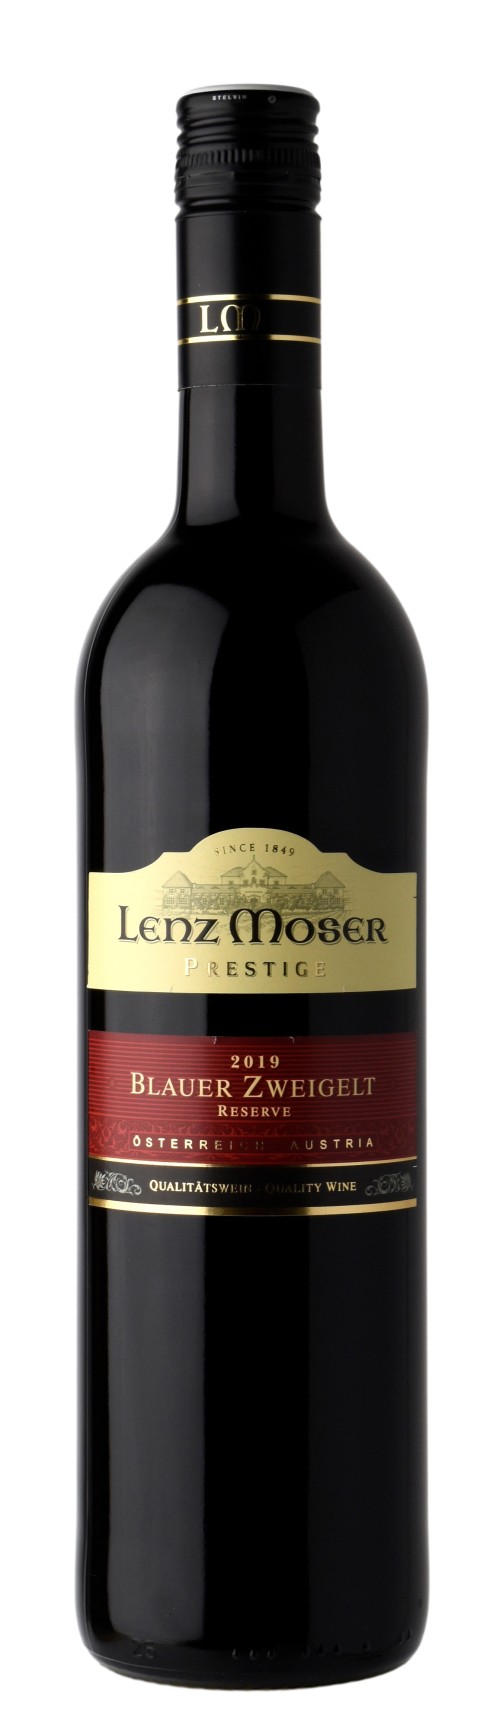 Prestige Wein Reserve Guide Zweigelt | Blauer